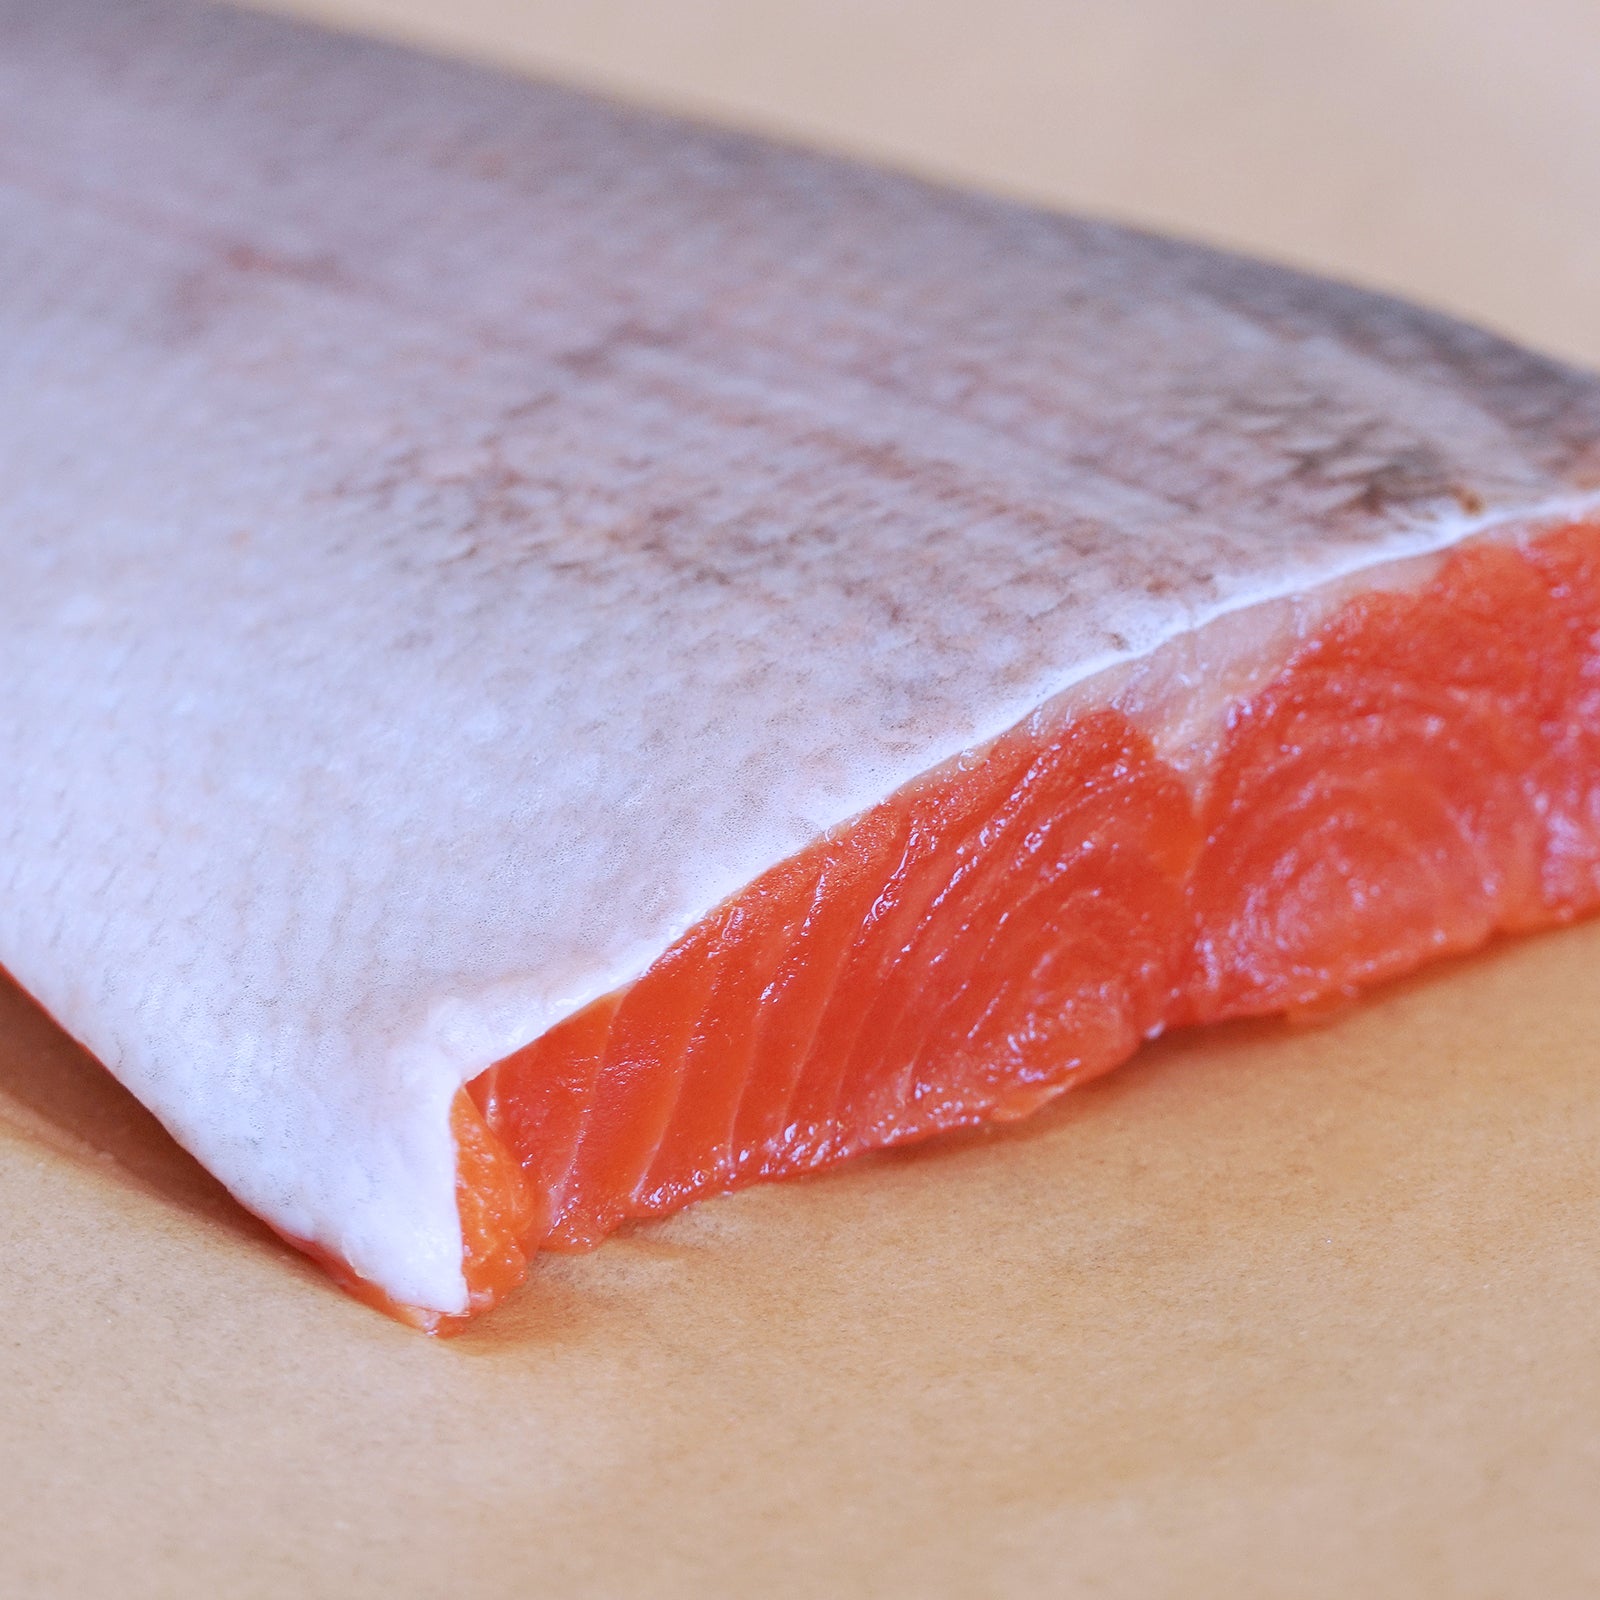 天然 高級 紅鮭 サーモン 切身 カナダ産 (200g) ホライズンファームズ